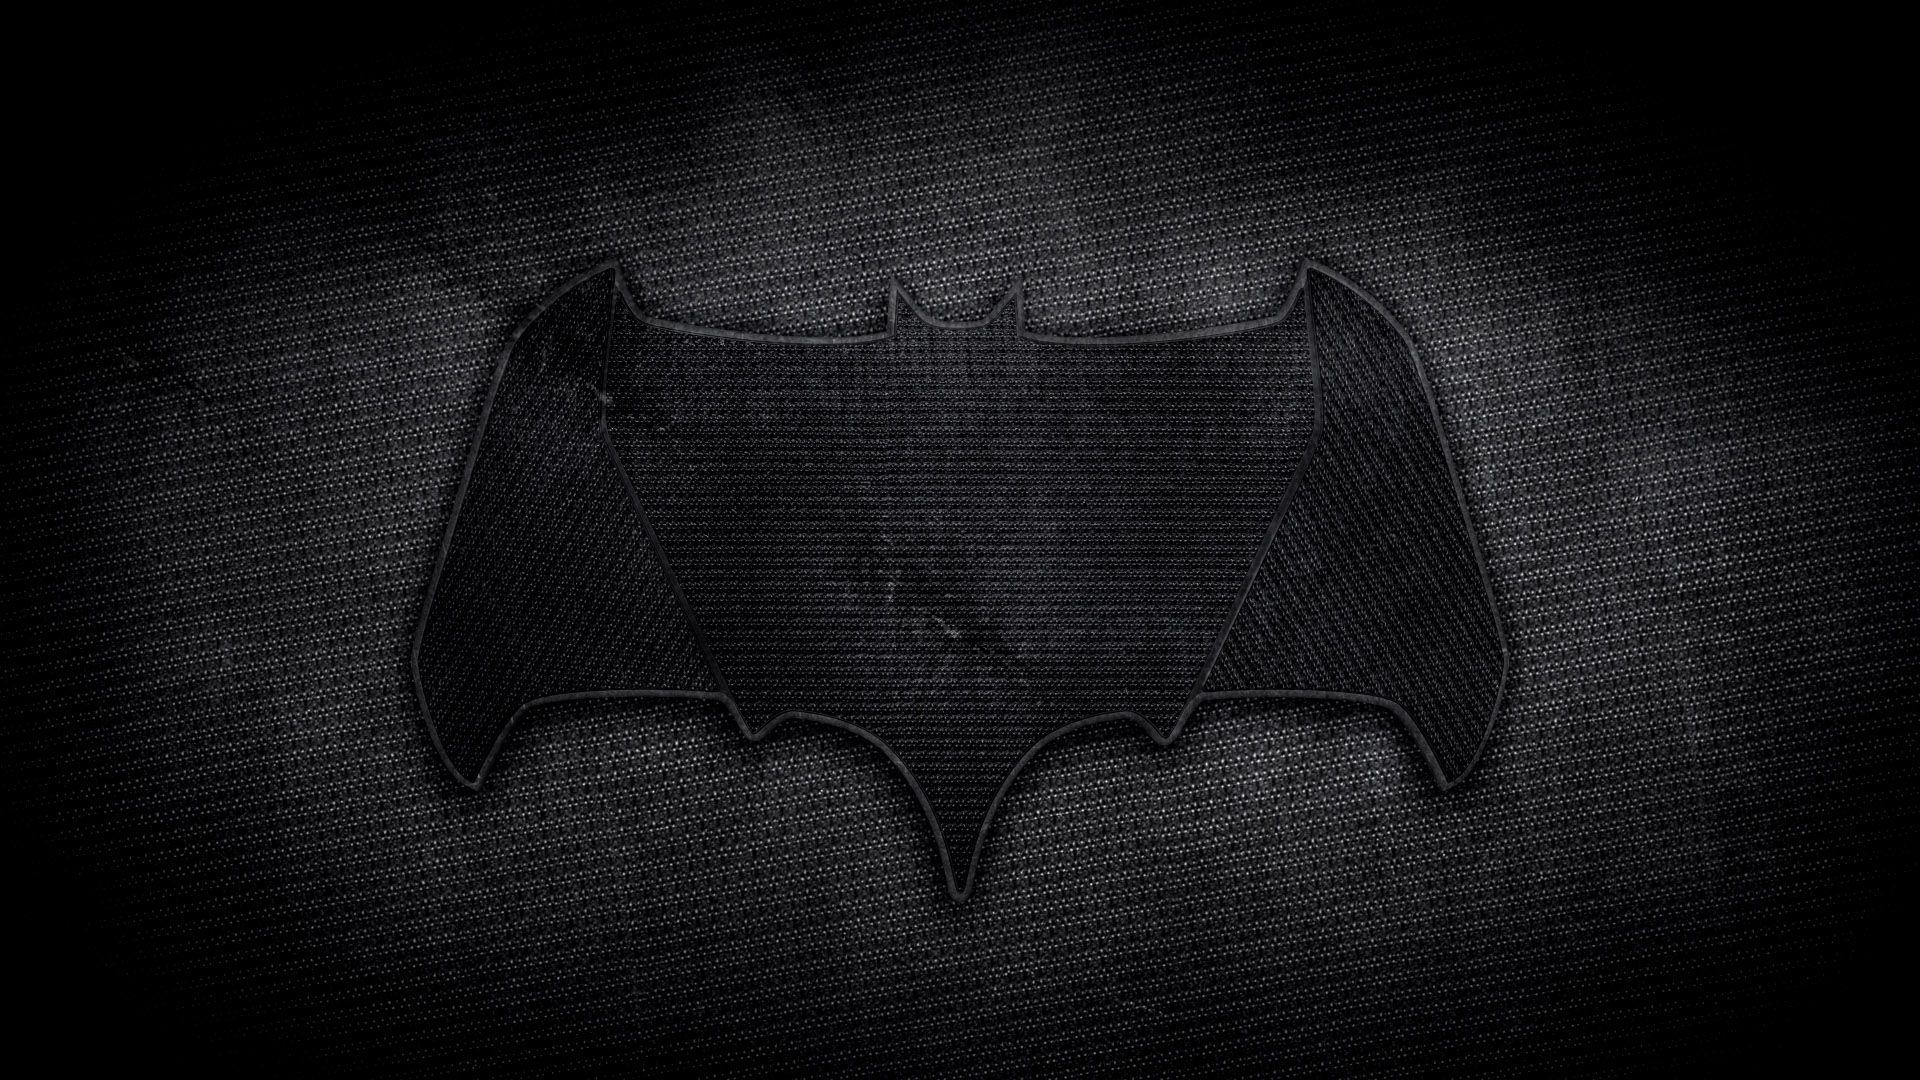 Superman vs Batman Batman Logo - Batman Logo wallpaper For Free Download (HD 1080p)